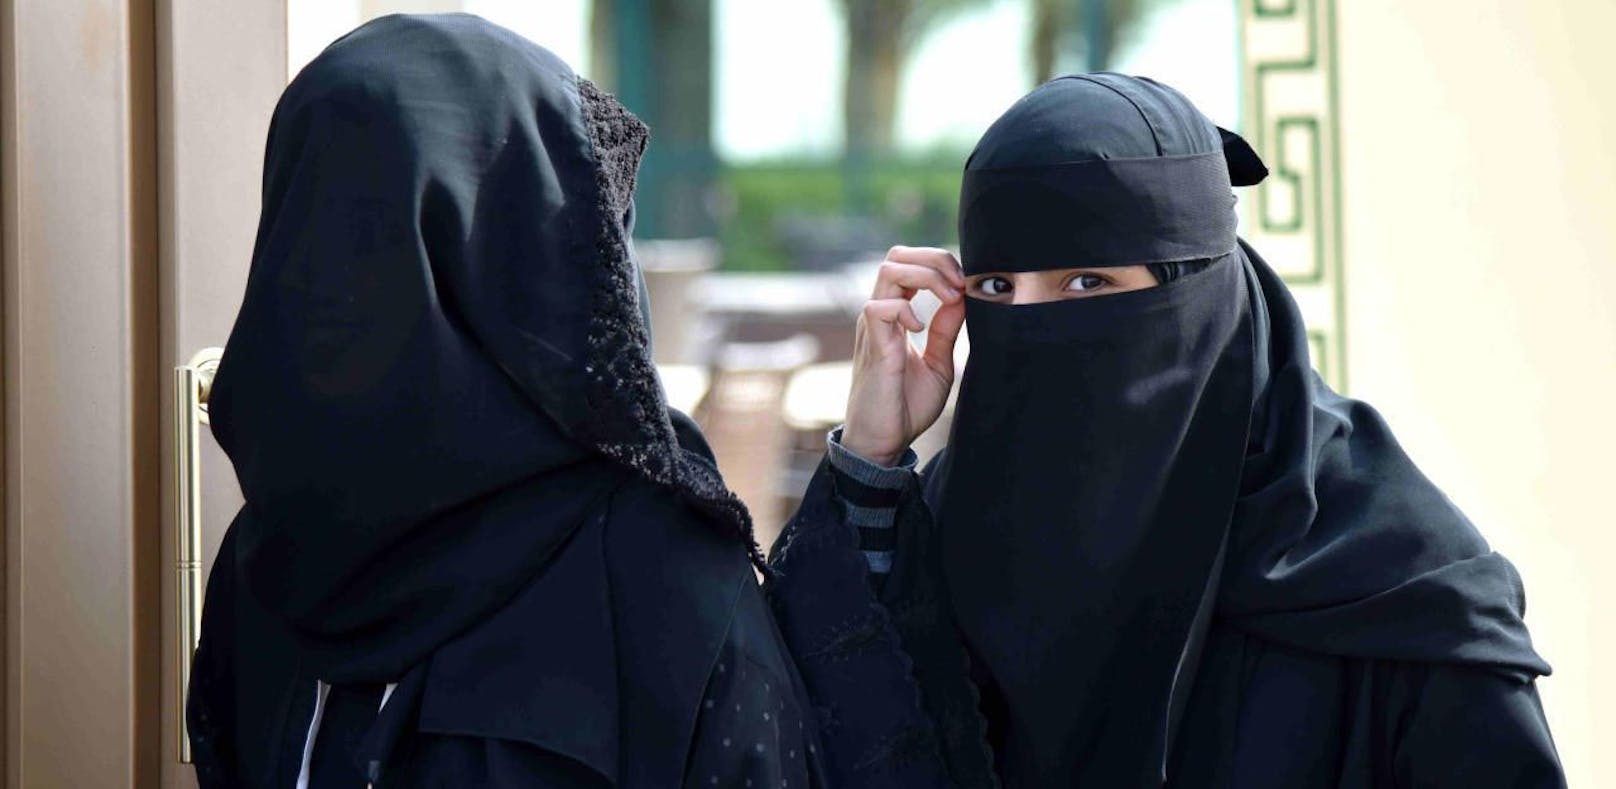 Nächstes EU-Land führt Burka-Verbot ein